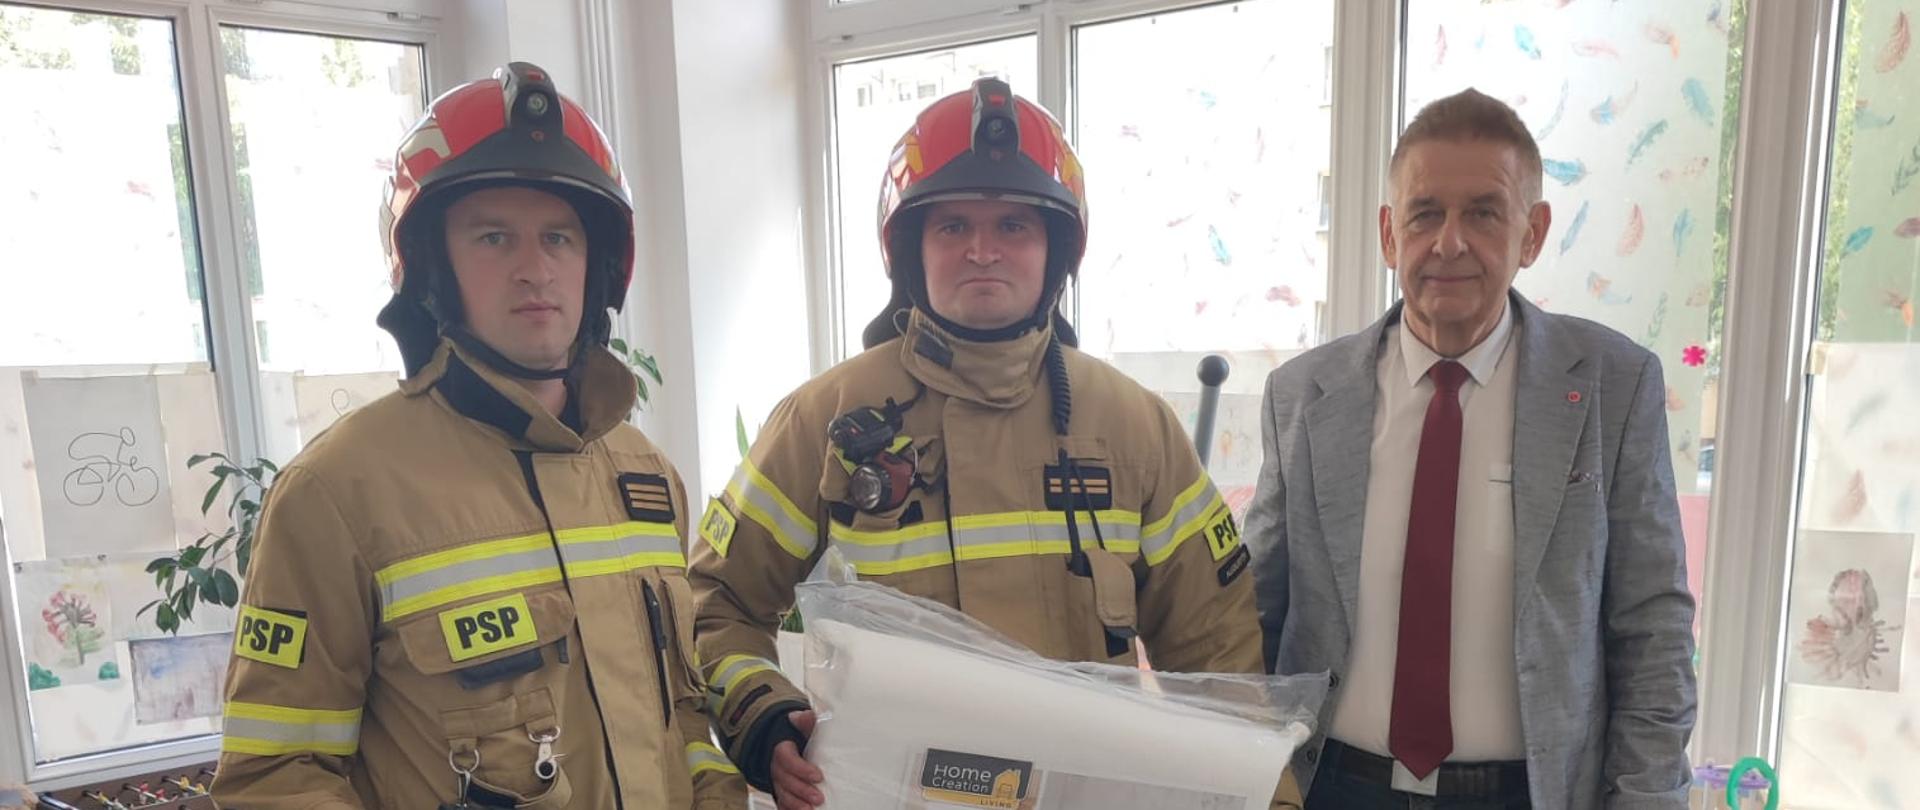 Na zdjęciu widać strażaków przekazujących paczkę przedstawicielowi Hospicjum w Augustowie